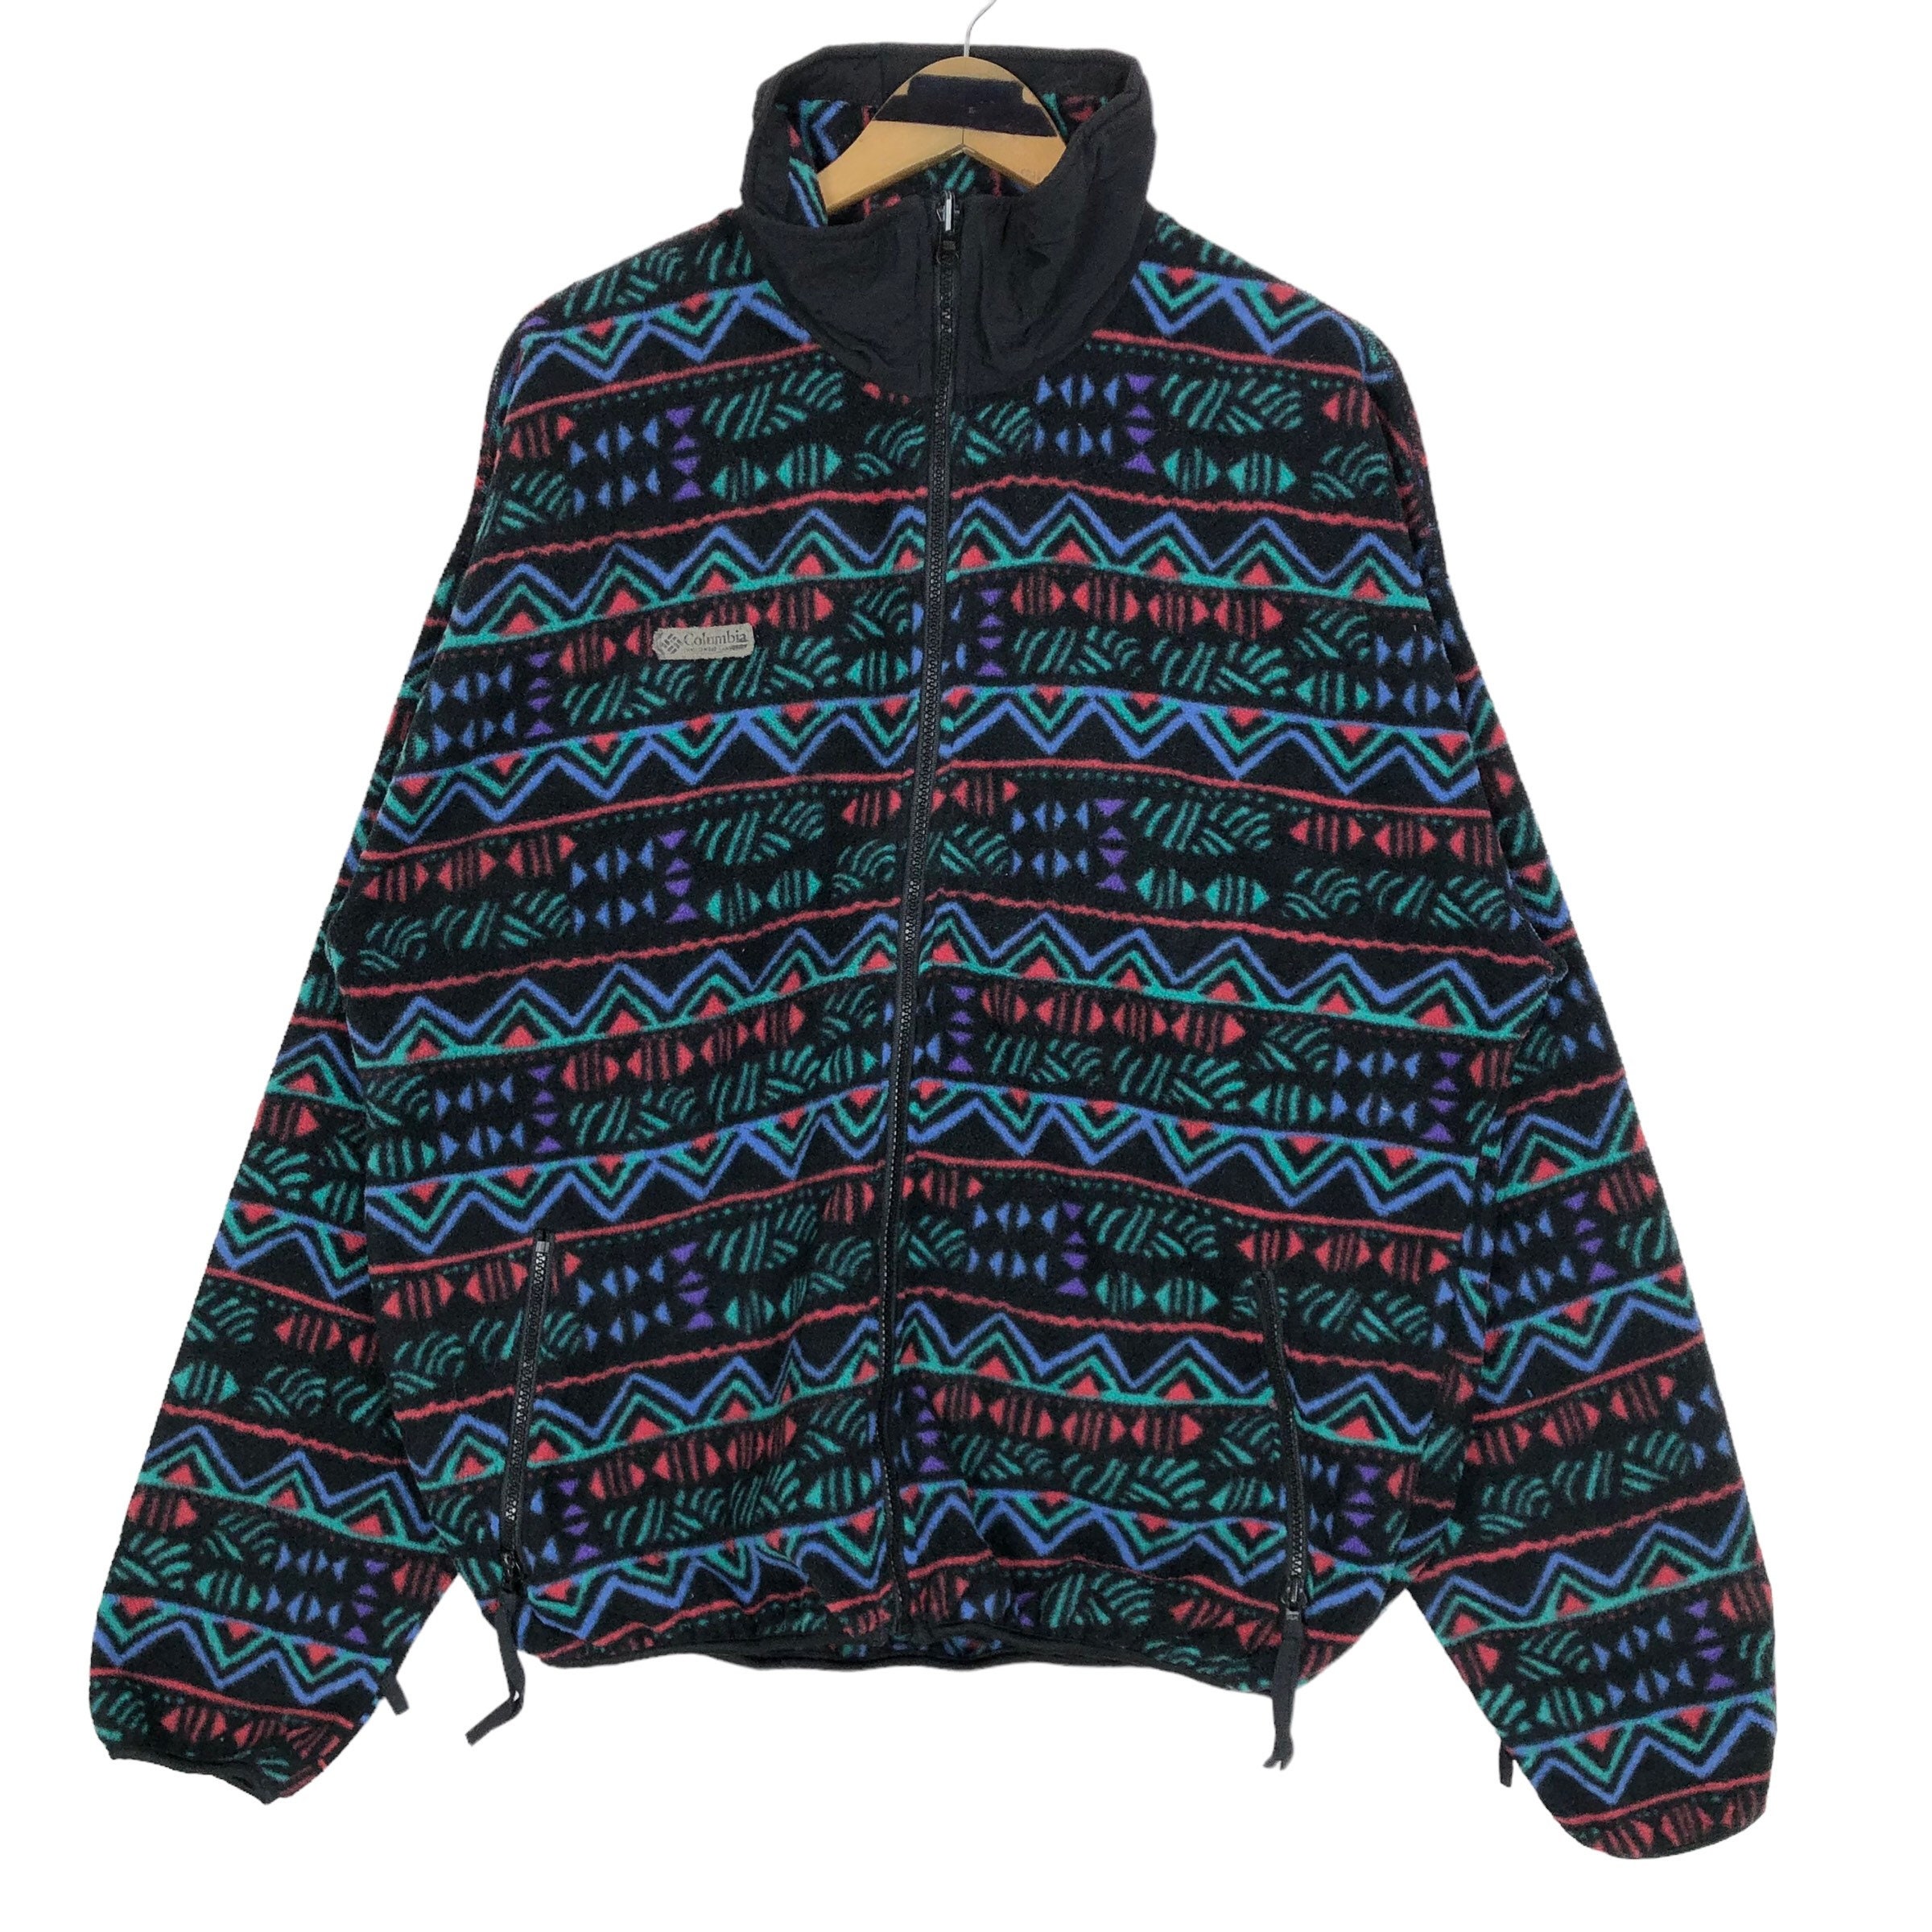 Vintage 90s Columbia Sportswear Company Mock Neck Fleece Sweater